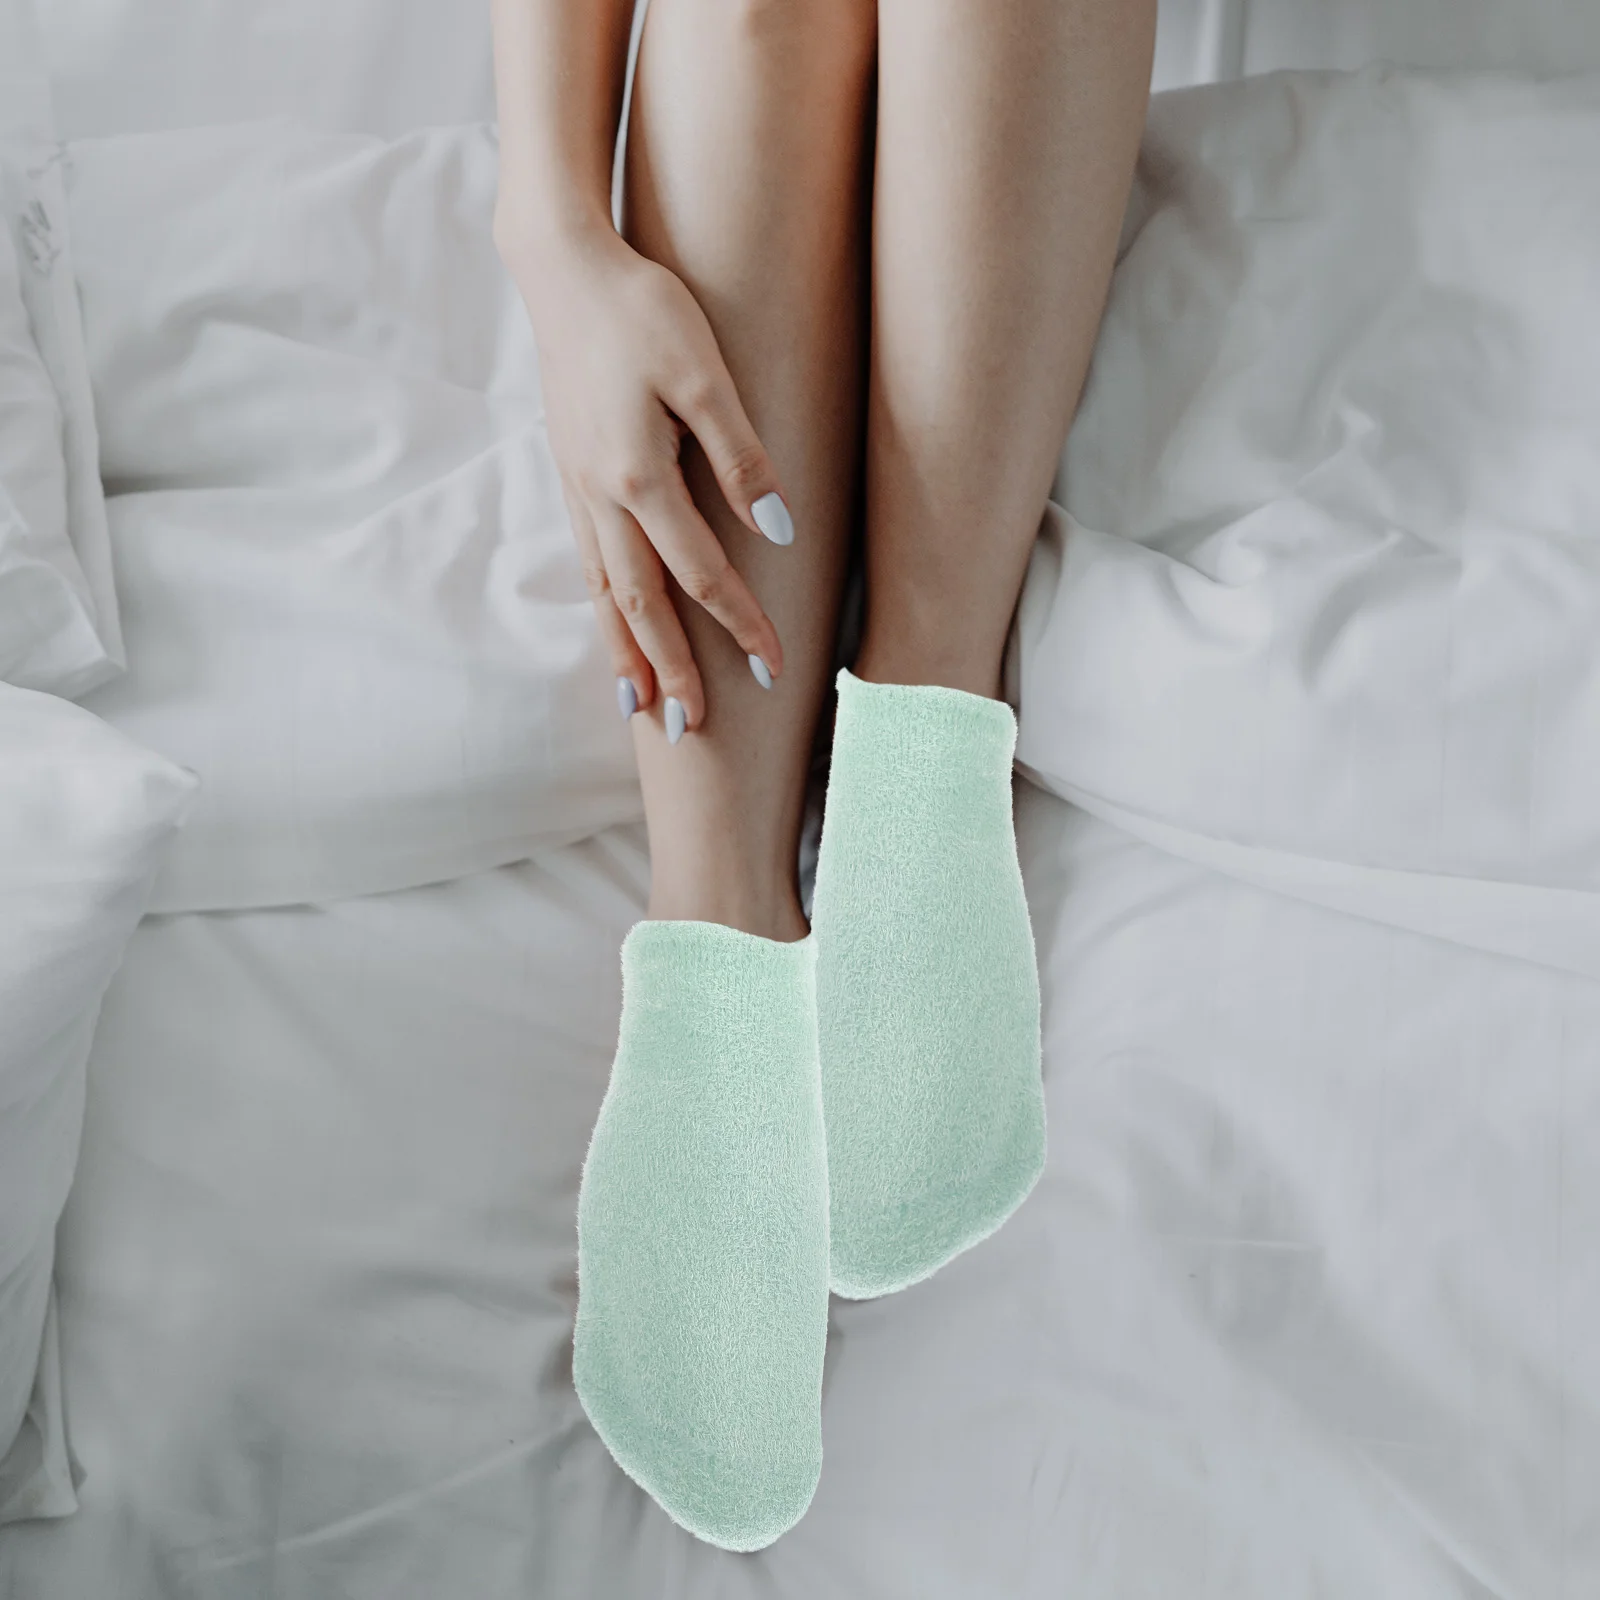 Гель для сухих рук, увлажняющий Женские гелевые носки, пряжа Soft Lady, лосьон Miss Изображение 1